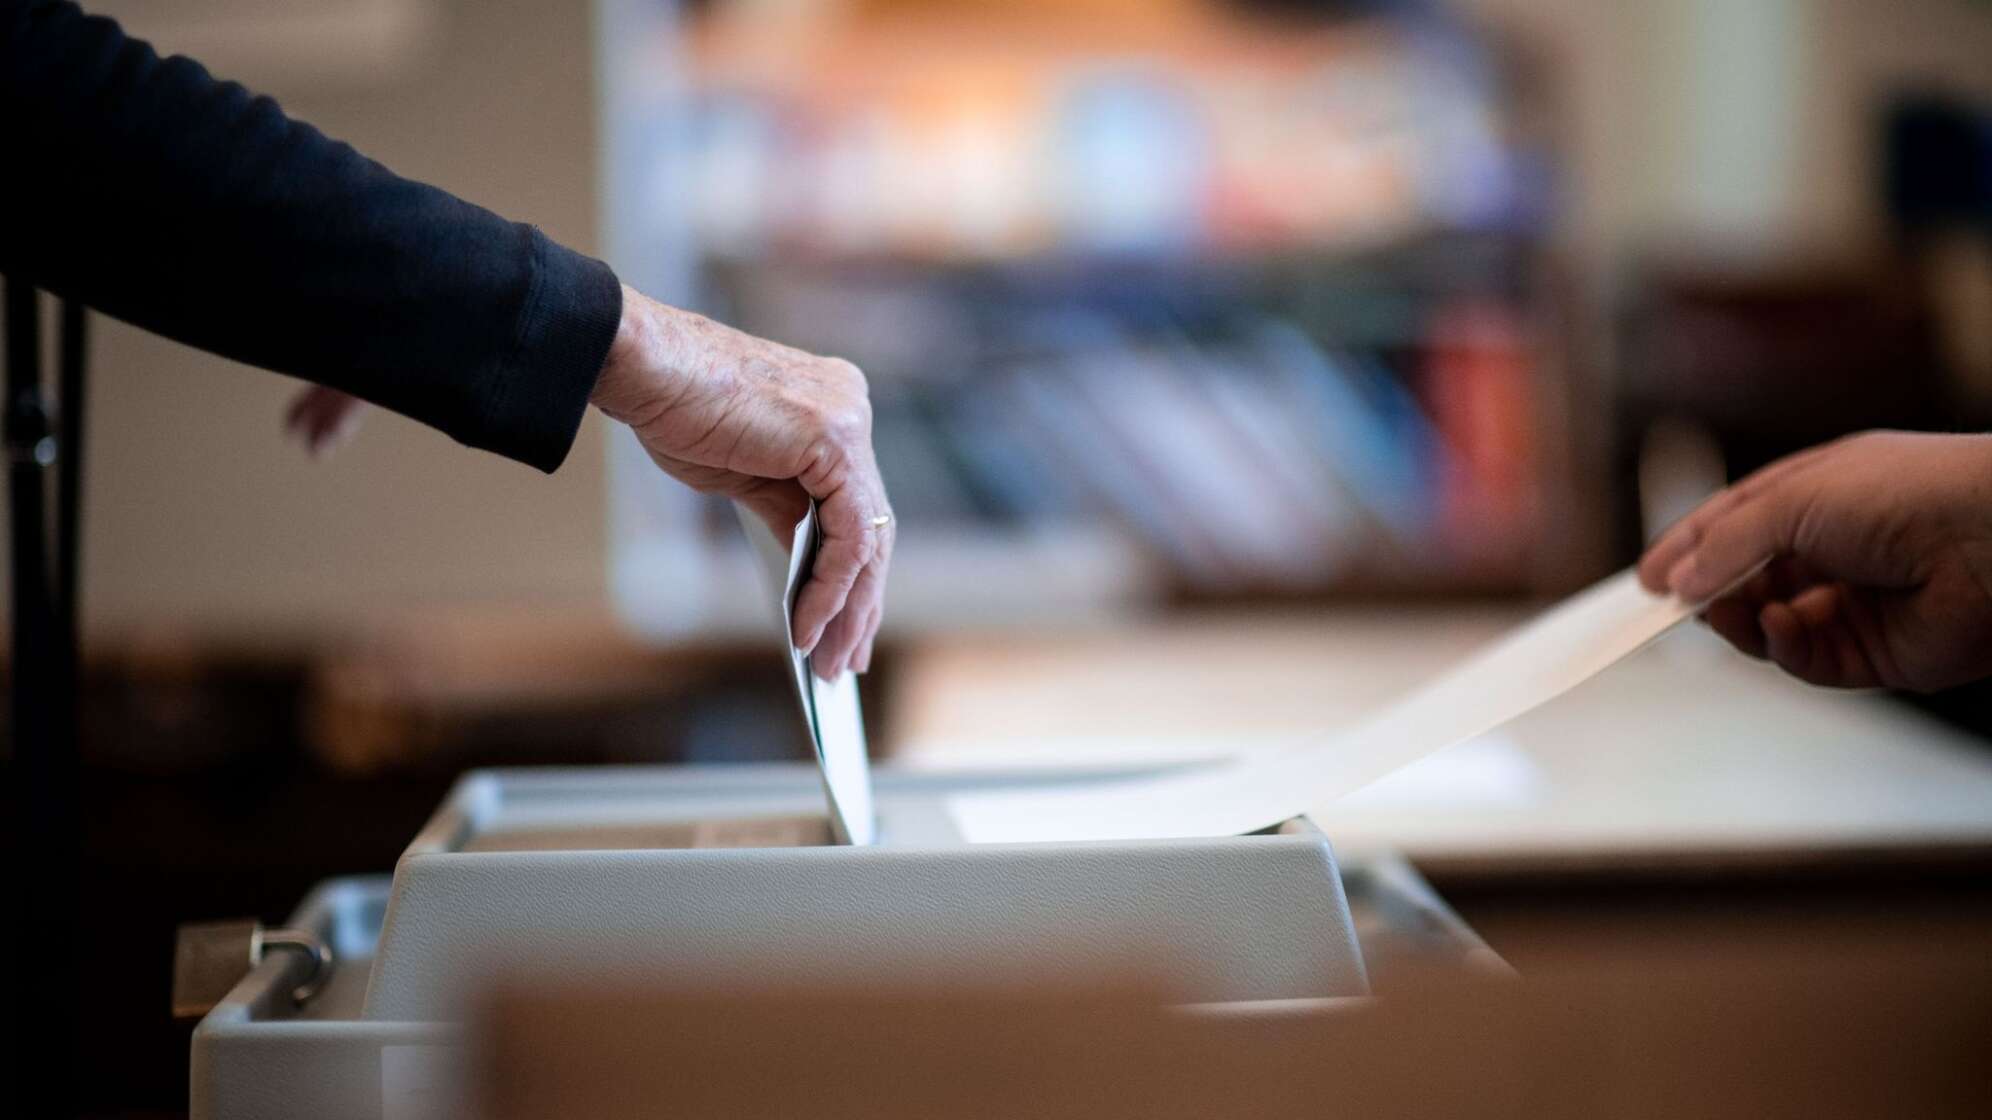 Wahllokale auch in NRW geöffnet